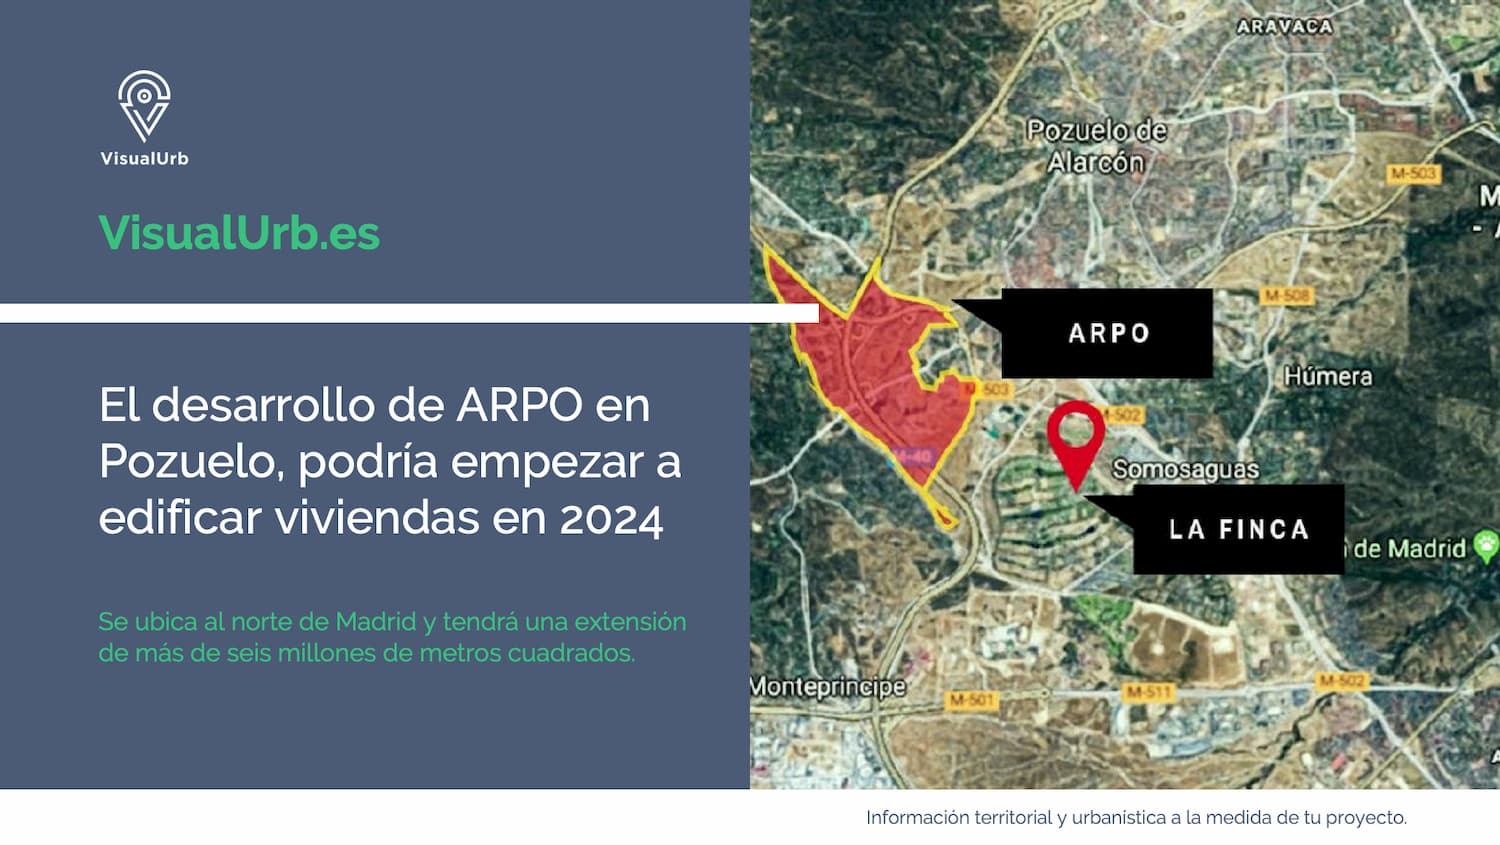 001 El desarrollo de ARPO en Pozuelo, podría empezar a edificar viviendas en 2024